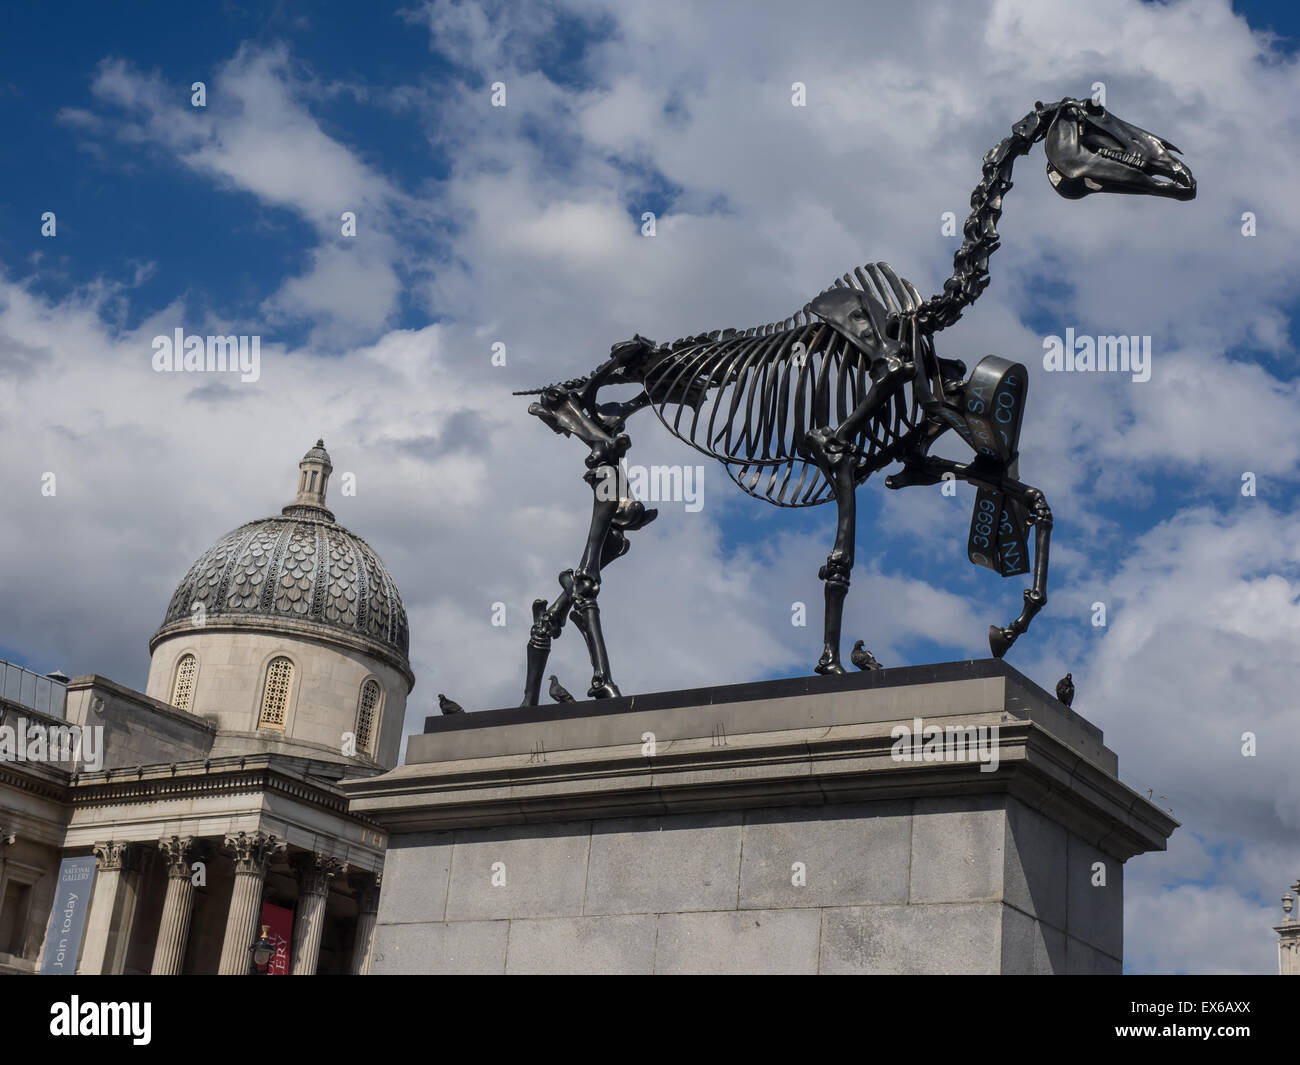 Statue de dinosaure à Trafalgar Square, Londres, Angleterre Banque D'Images